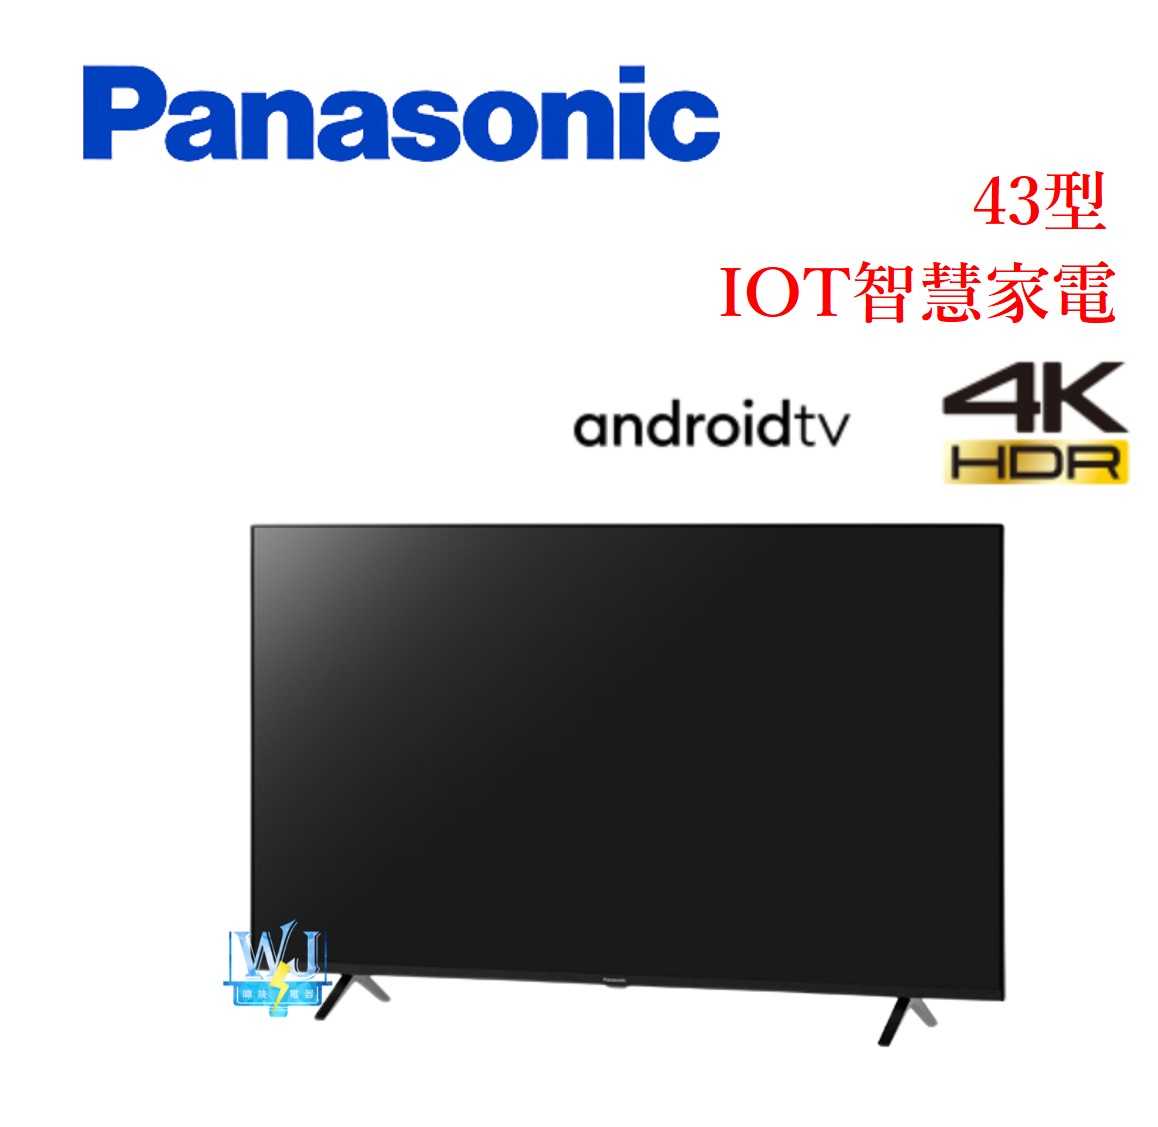 【暐竣電器】Panasonic 國際 TH-43LX650W 43型液晶電視 TH43LX650W 4K電視